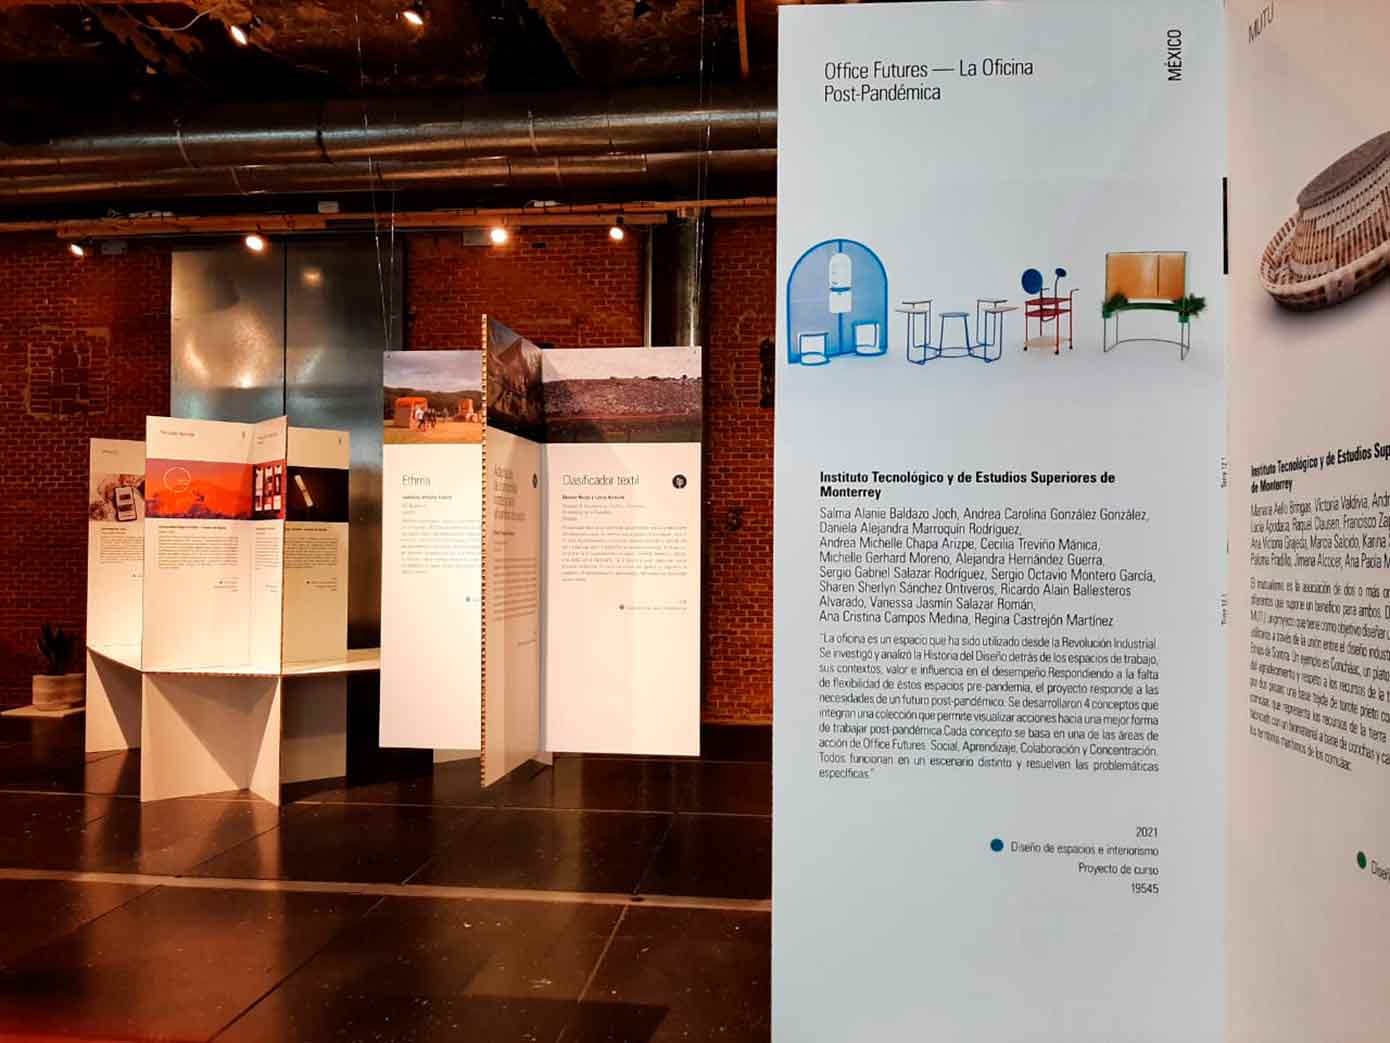 Tec destaca en el 9no. encuentro de la Bienal de Diseño Iberoamericano. 